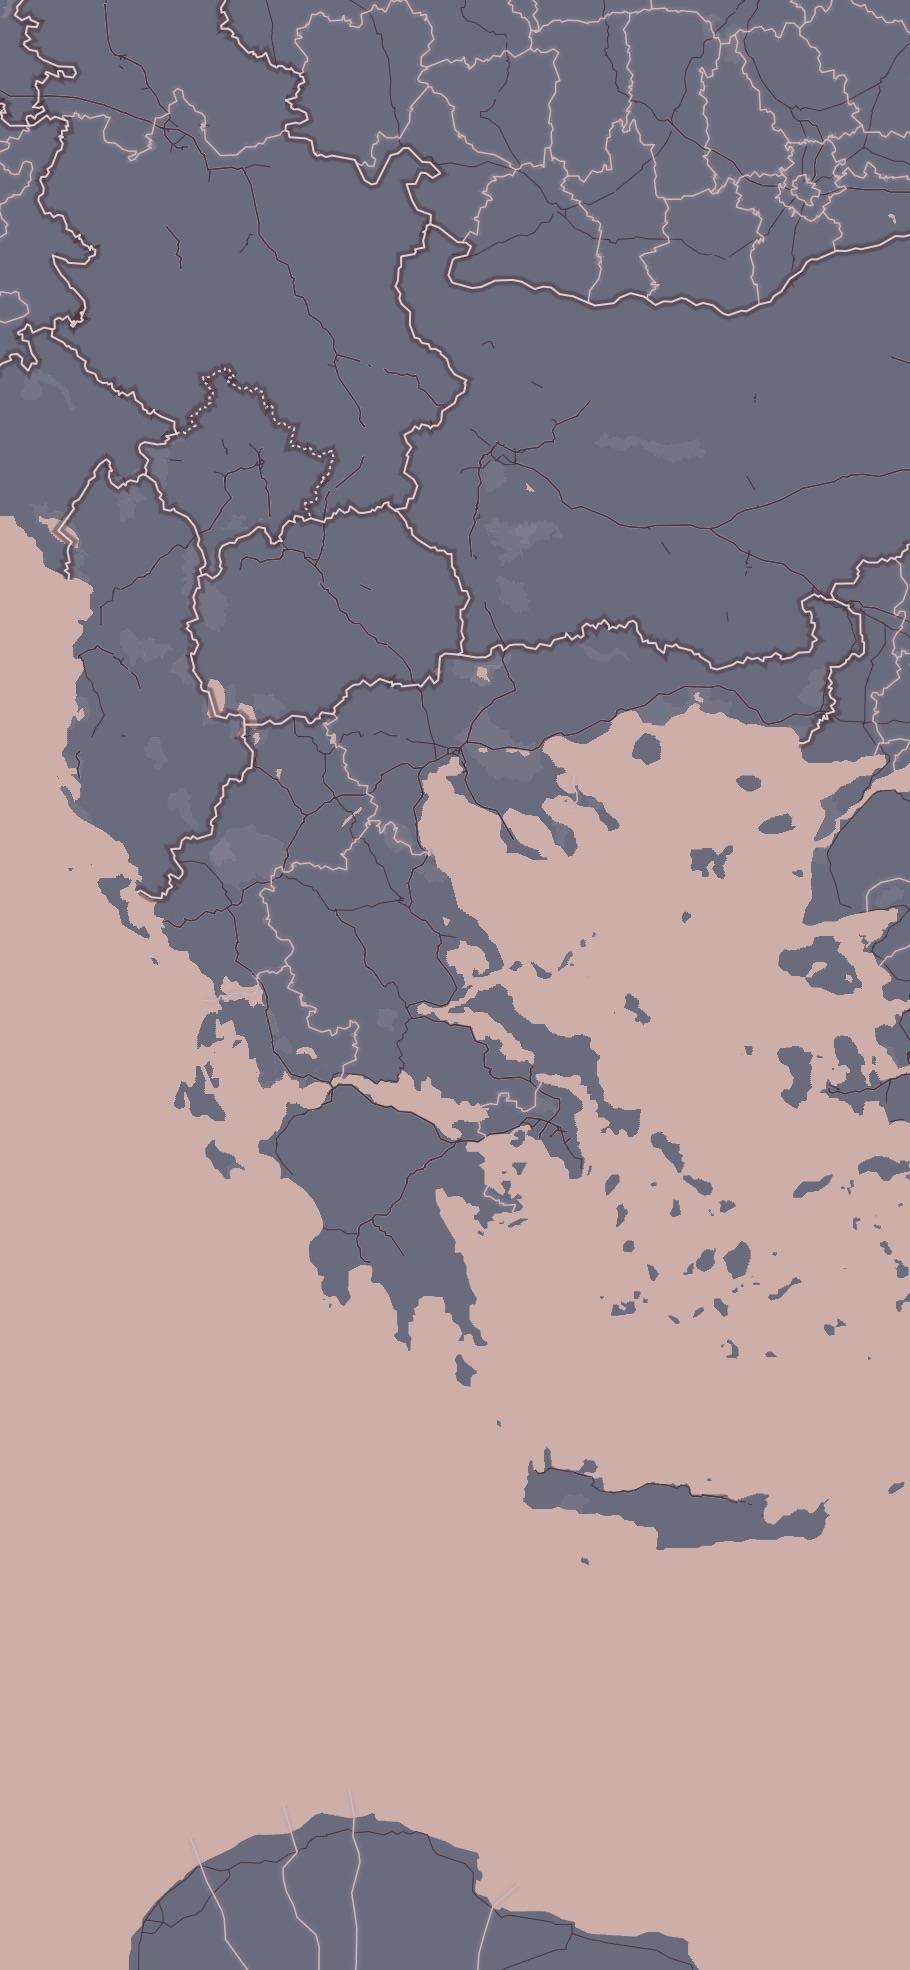 iPhone XR wallpaper / map Greece